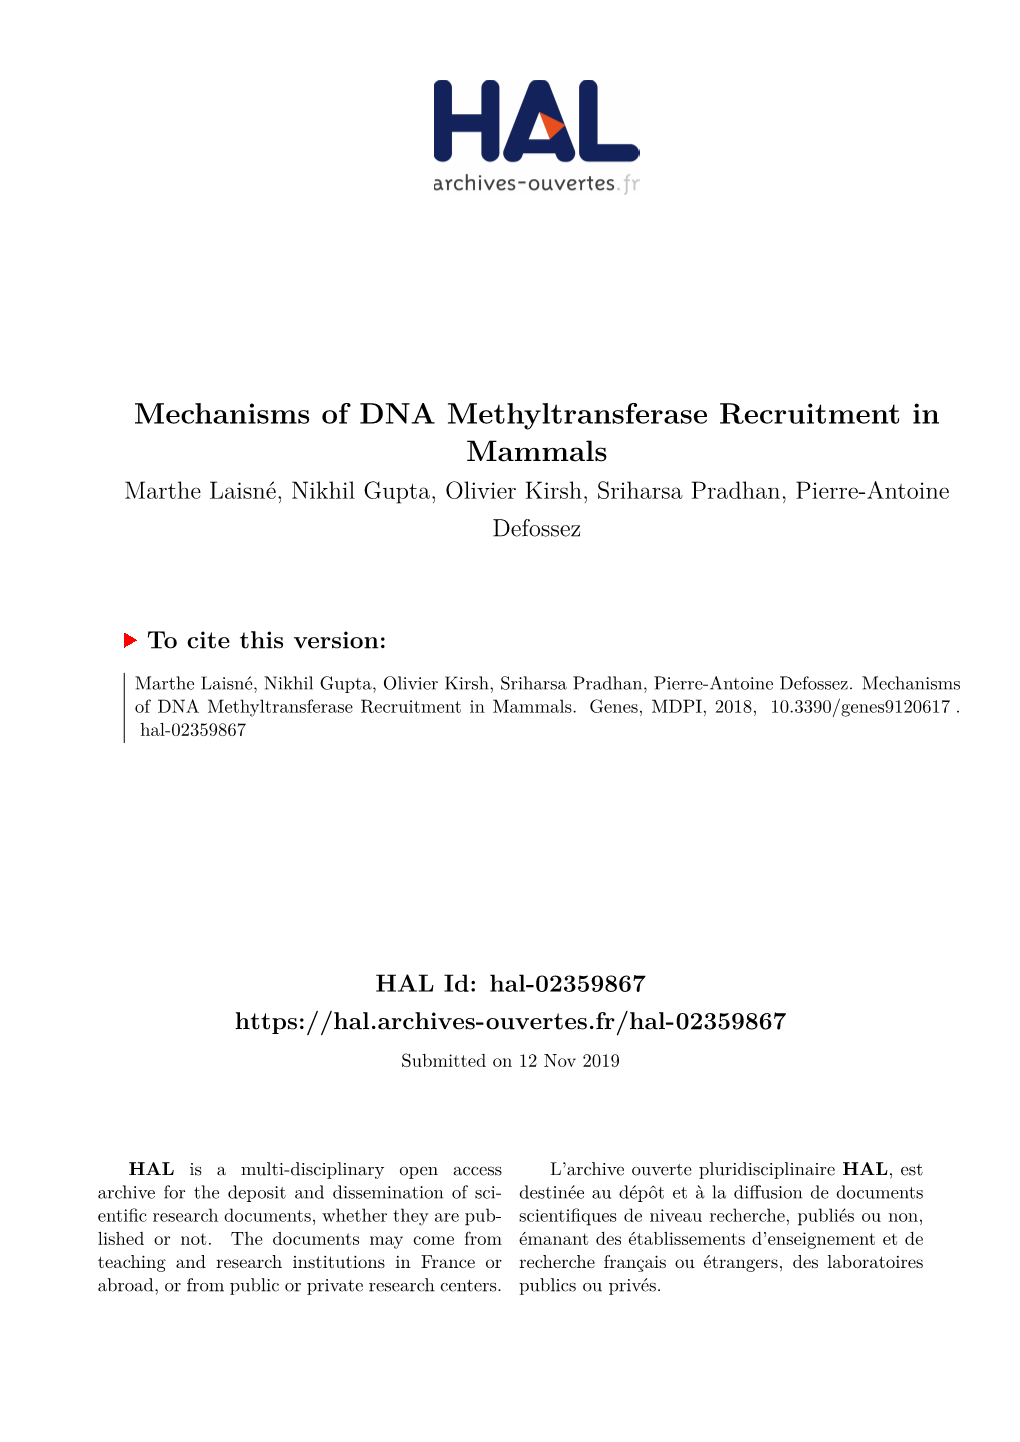 Mechanisms of DNA Methyltransferase Recruitment in Mammals Marthe Laisné, Nikhil Gupta, Olivier Kirsh, Sriharsa Pradhan, Pierre-Antoine Defossez